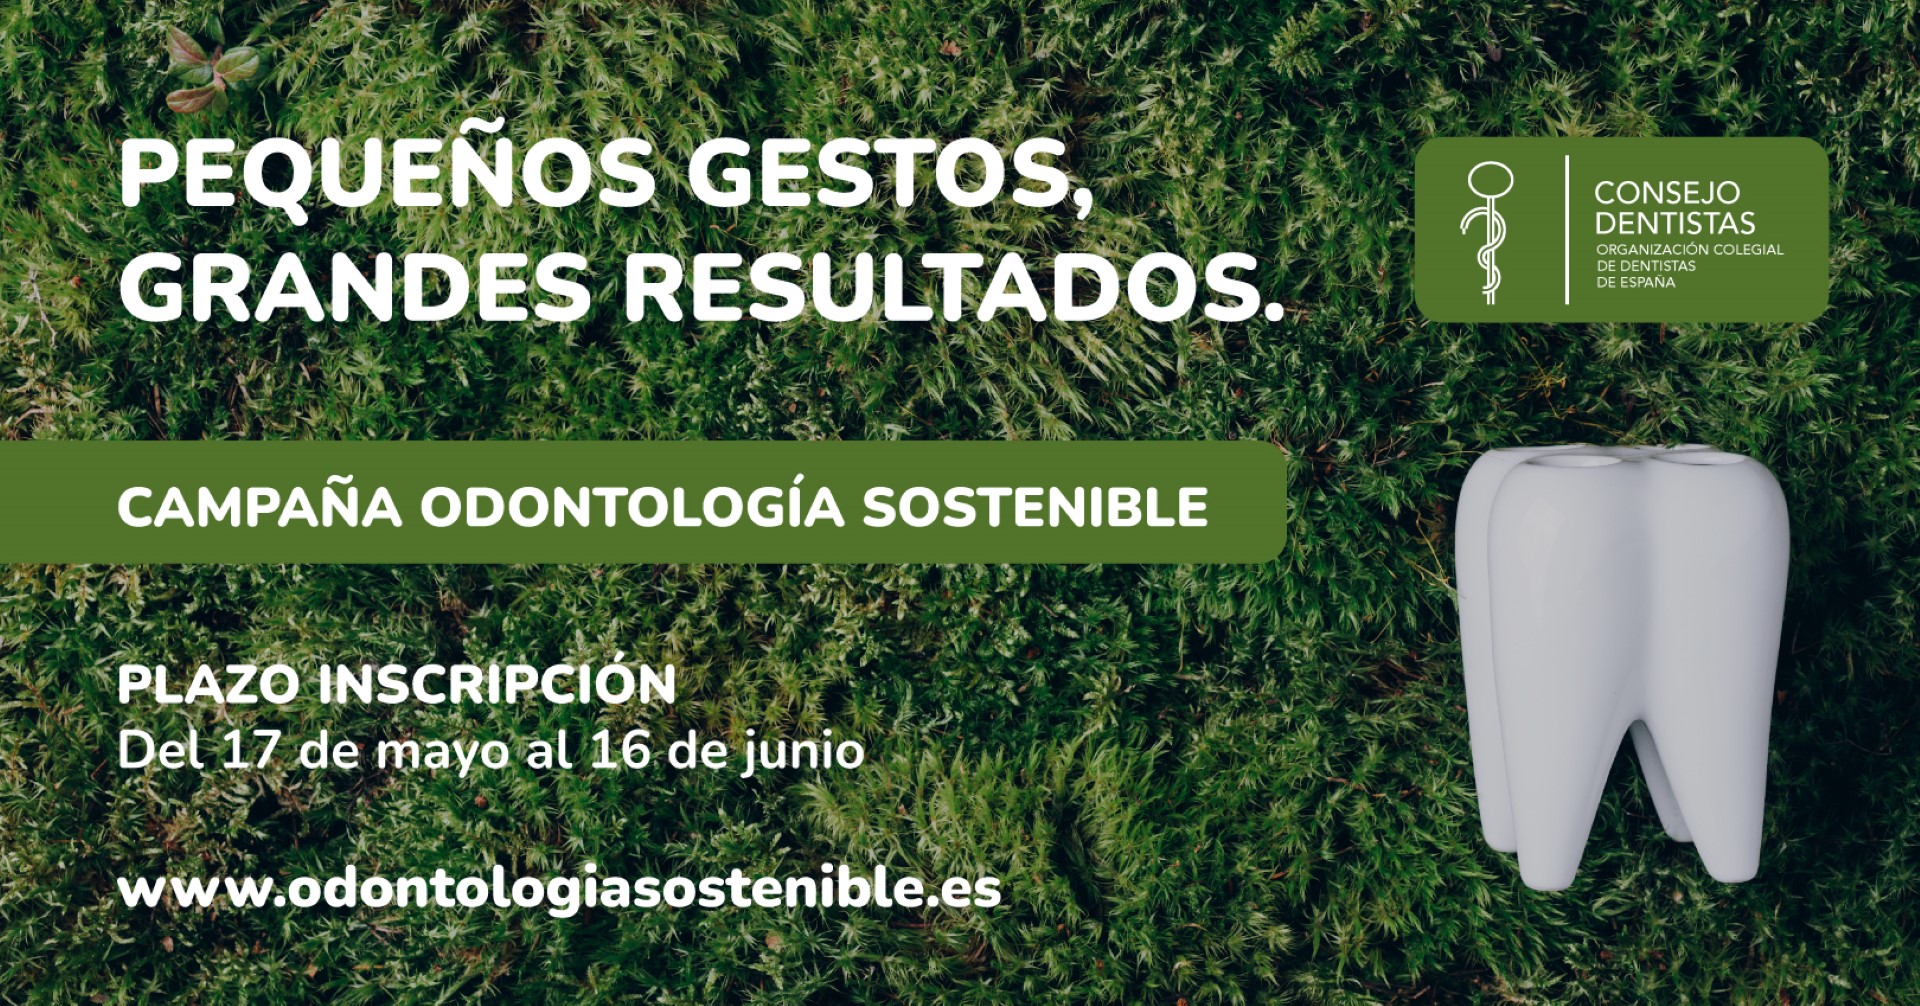 El Consejo de Dentistas y la Fundación Dental Española promueven la Odontología sostenible